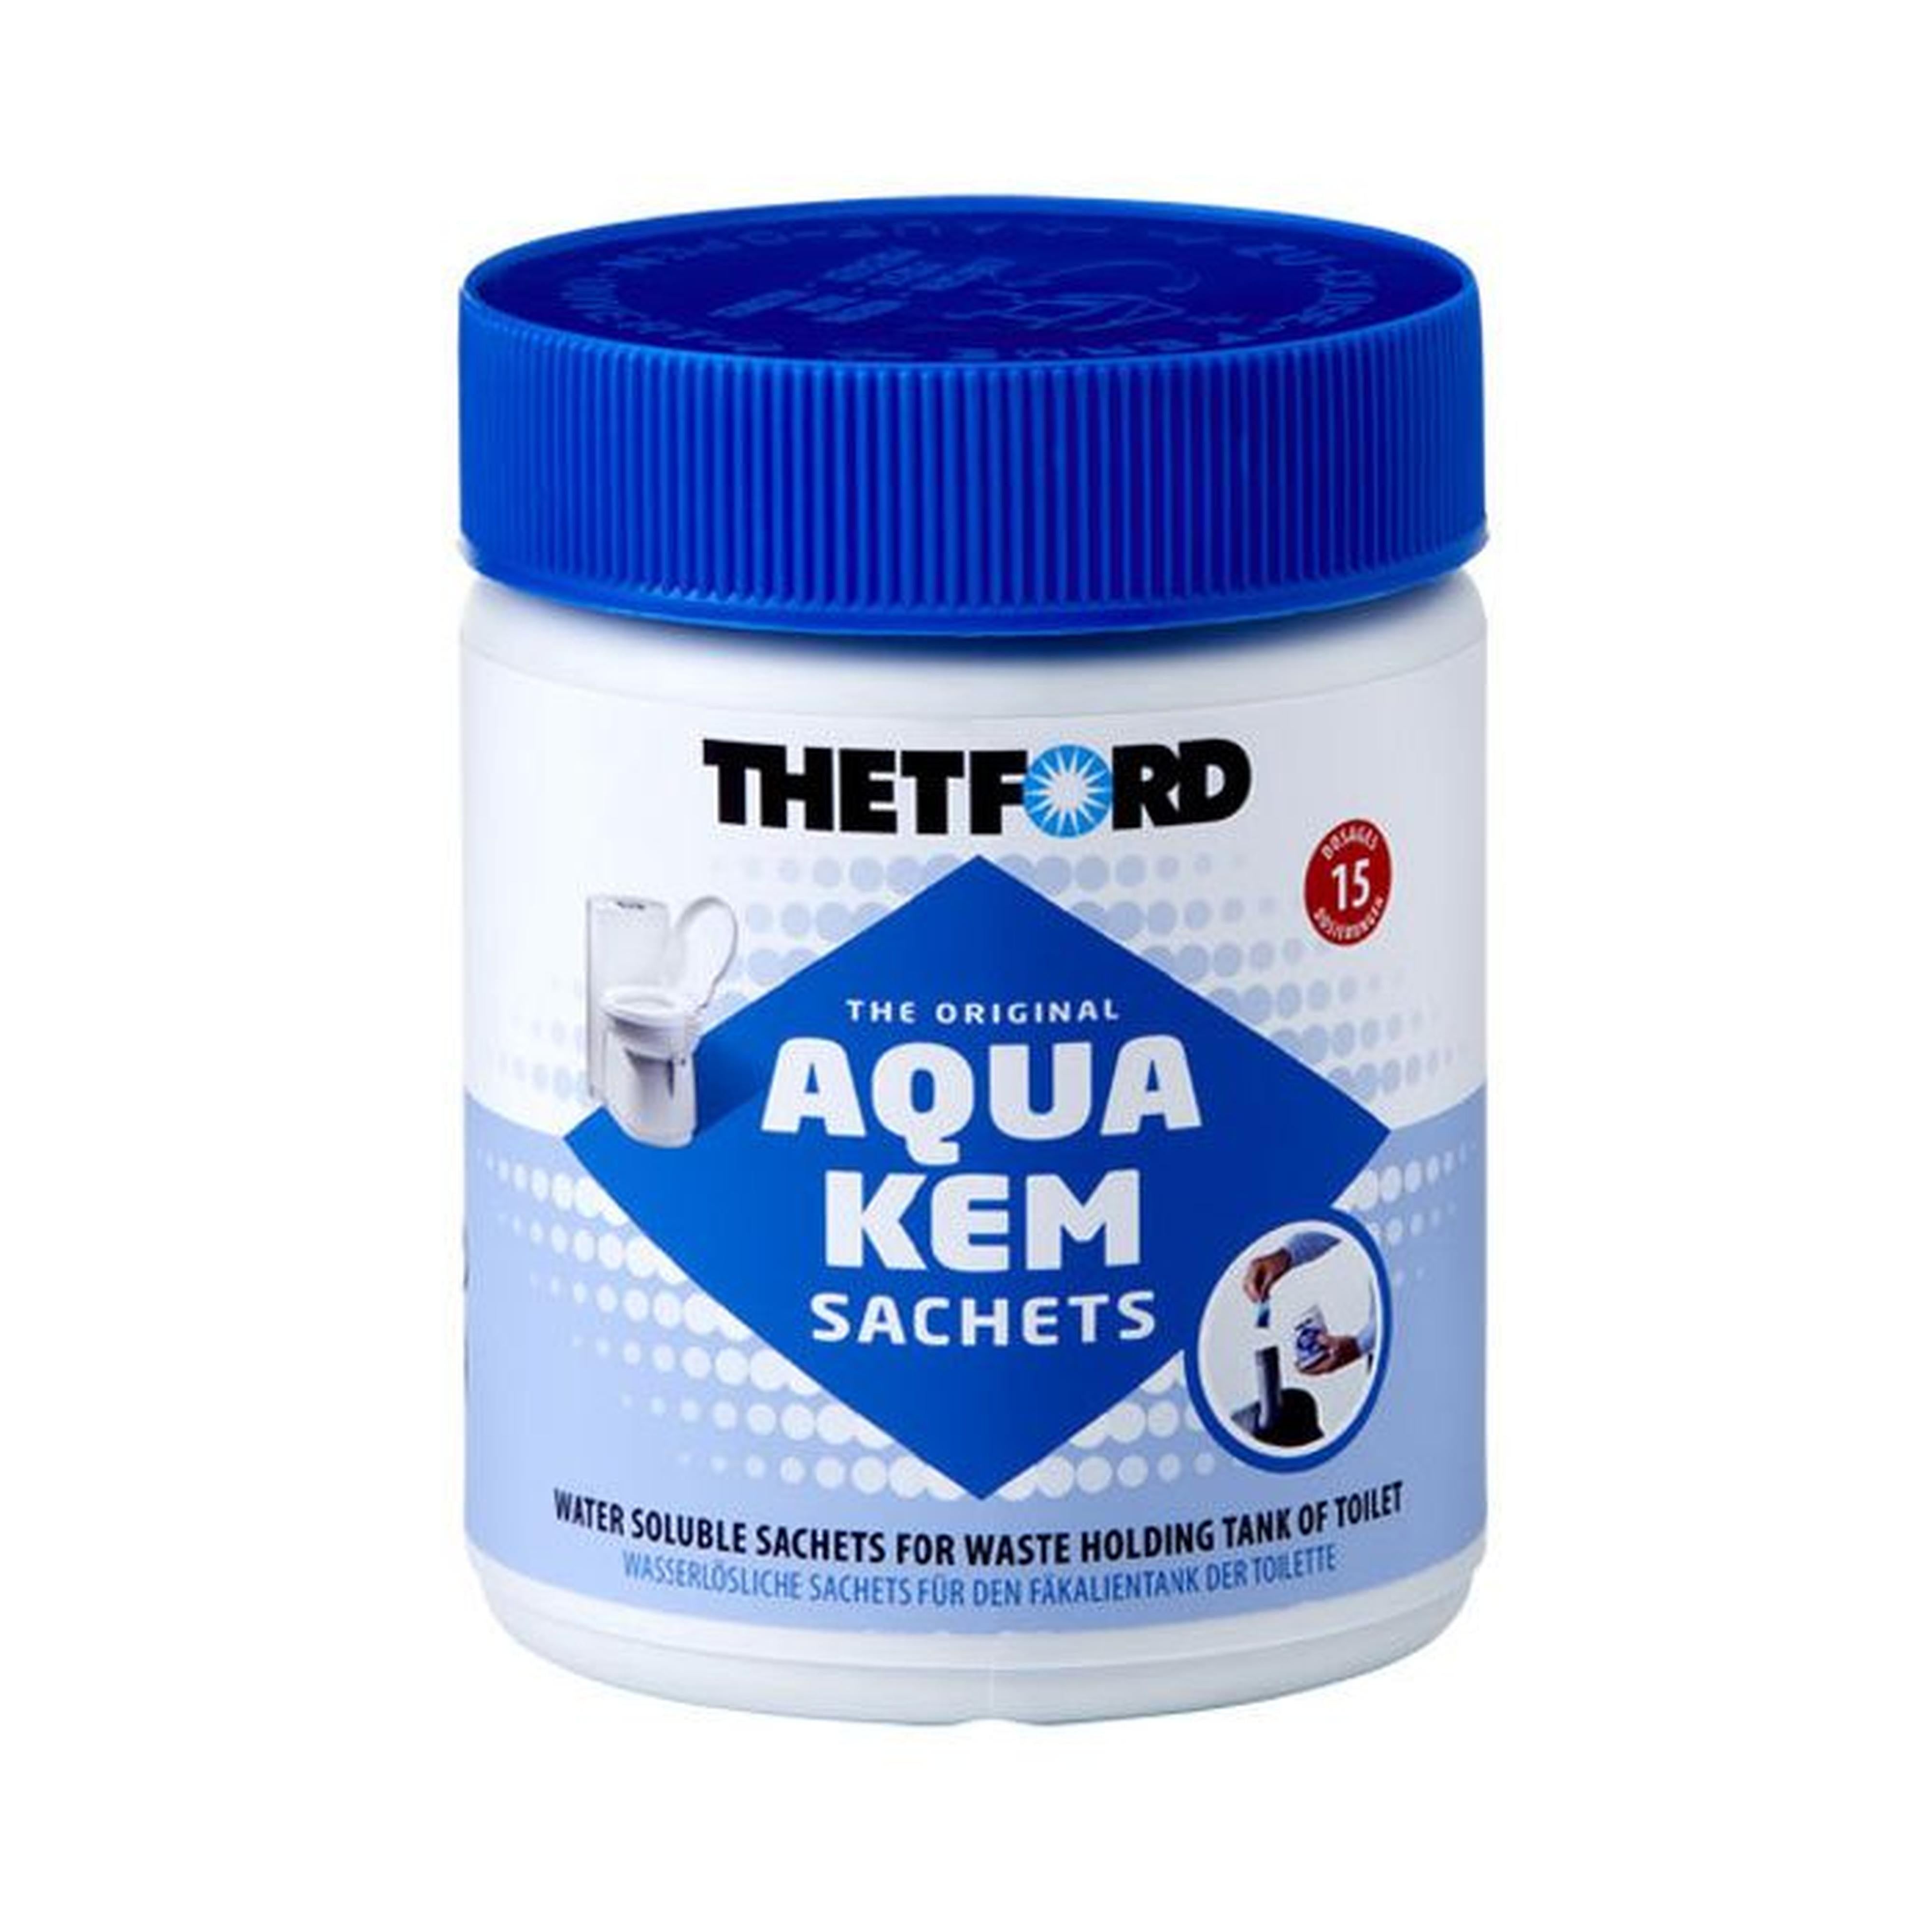 Thetford Aqua Kem Blue sachets - the convenient aqua kem blue sachets 